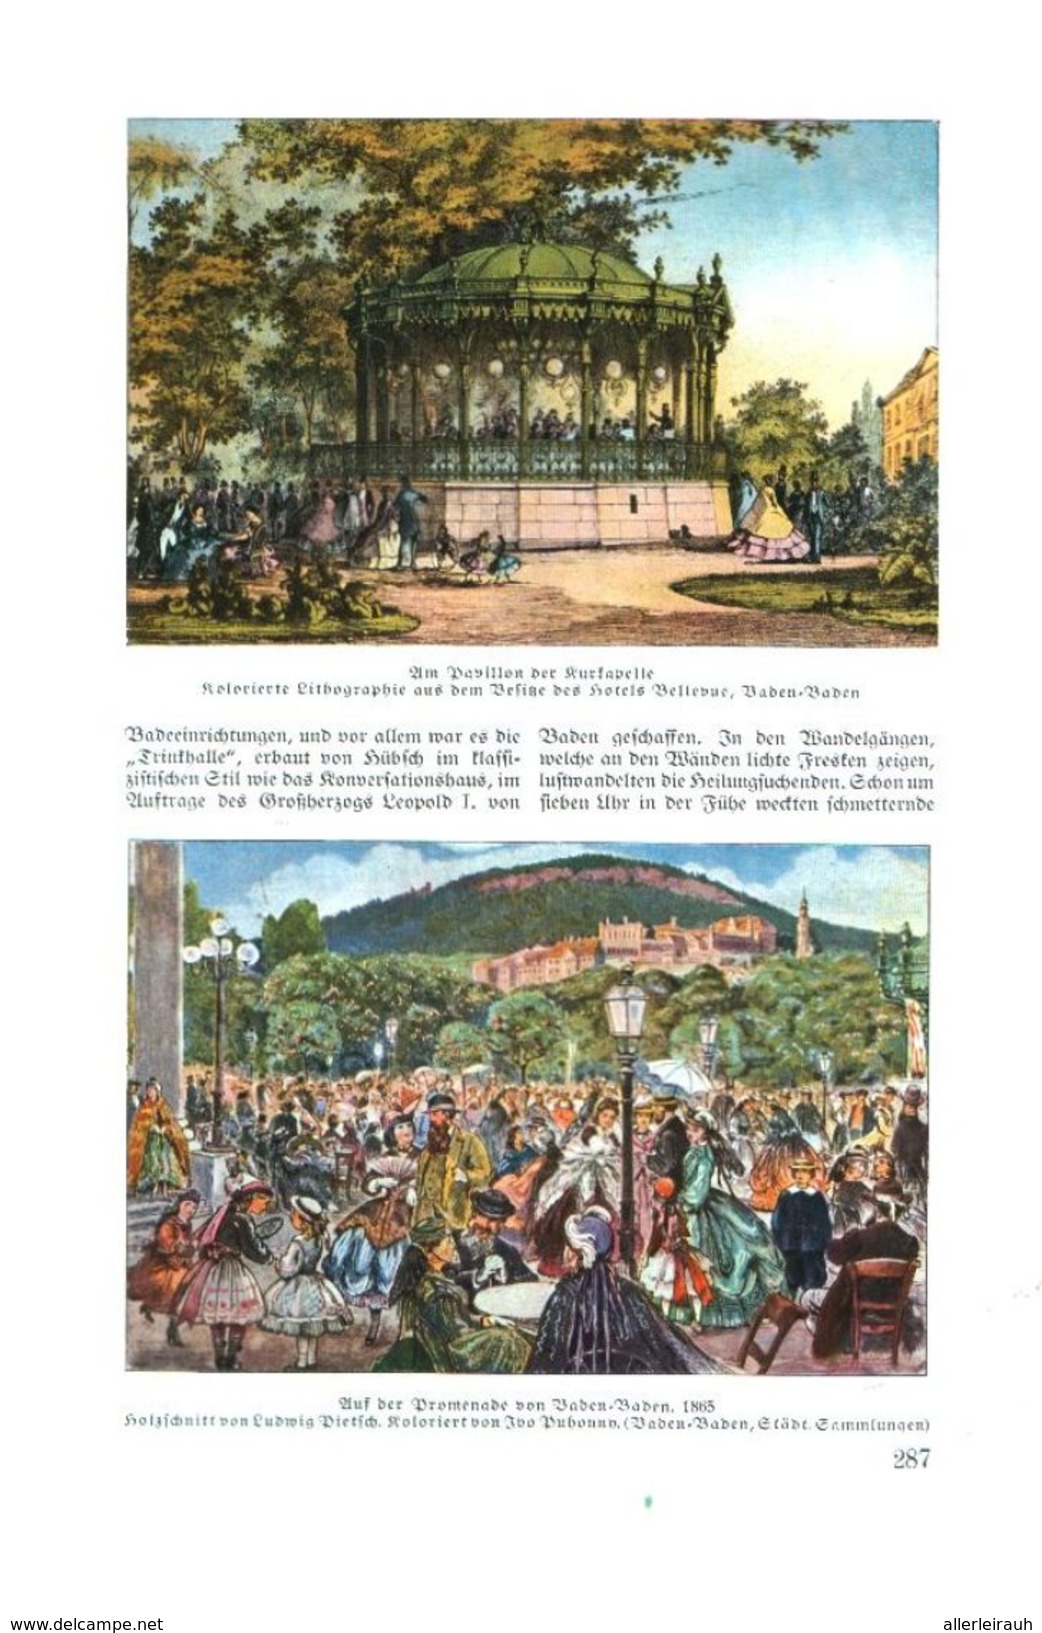 Baden-Baden um 1860 /  Artikel, entnommen aus Zeitschrift /1936